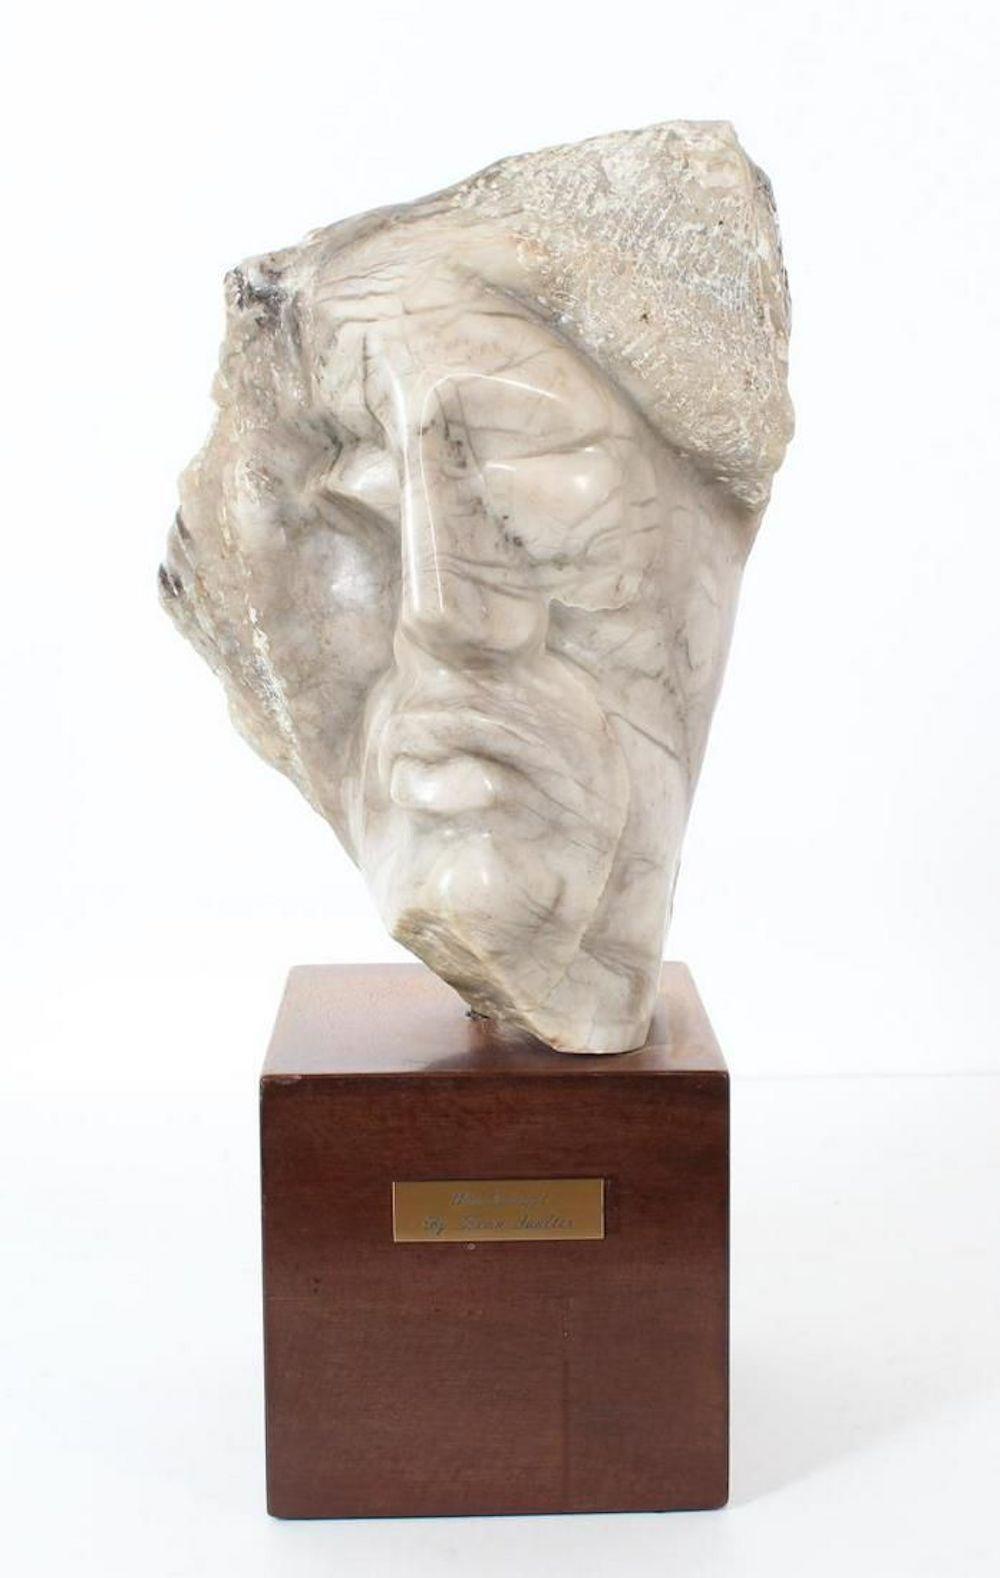 Leon Saulter  Figurative Sculpture - Windswept Face Of A Man Marble Sculpture 